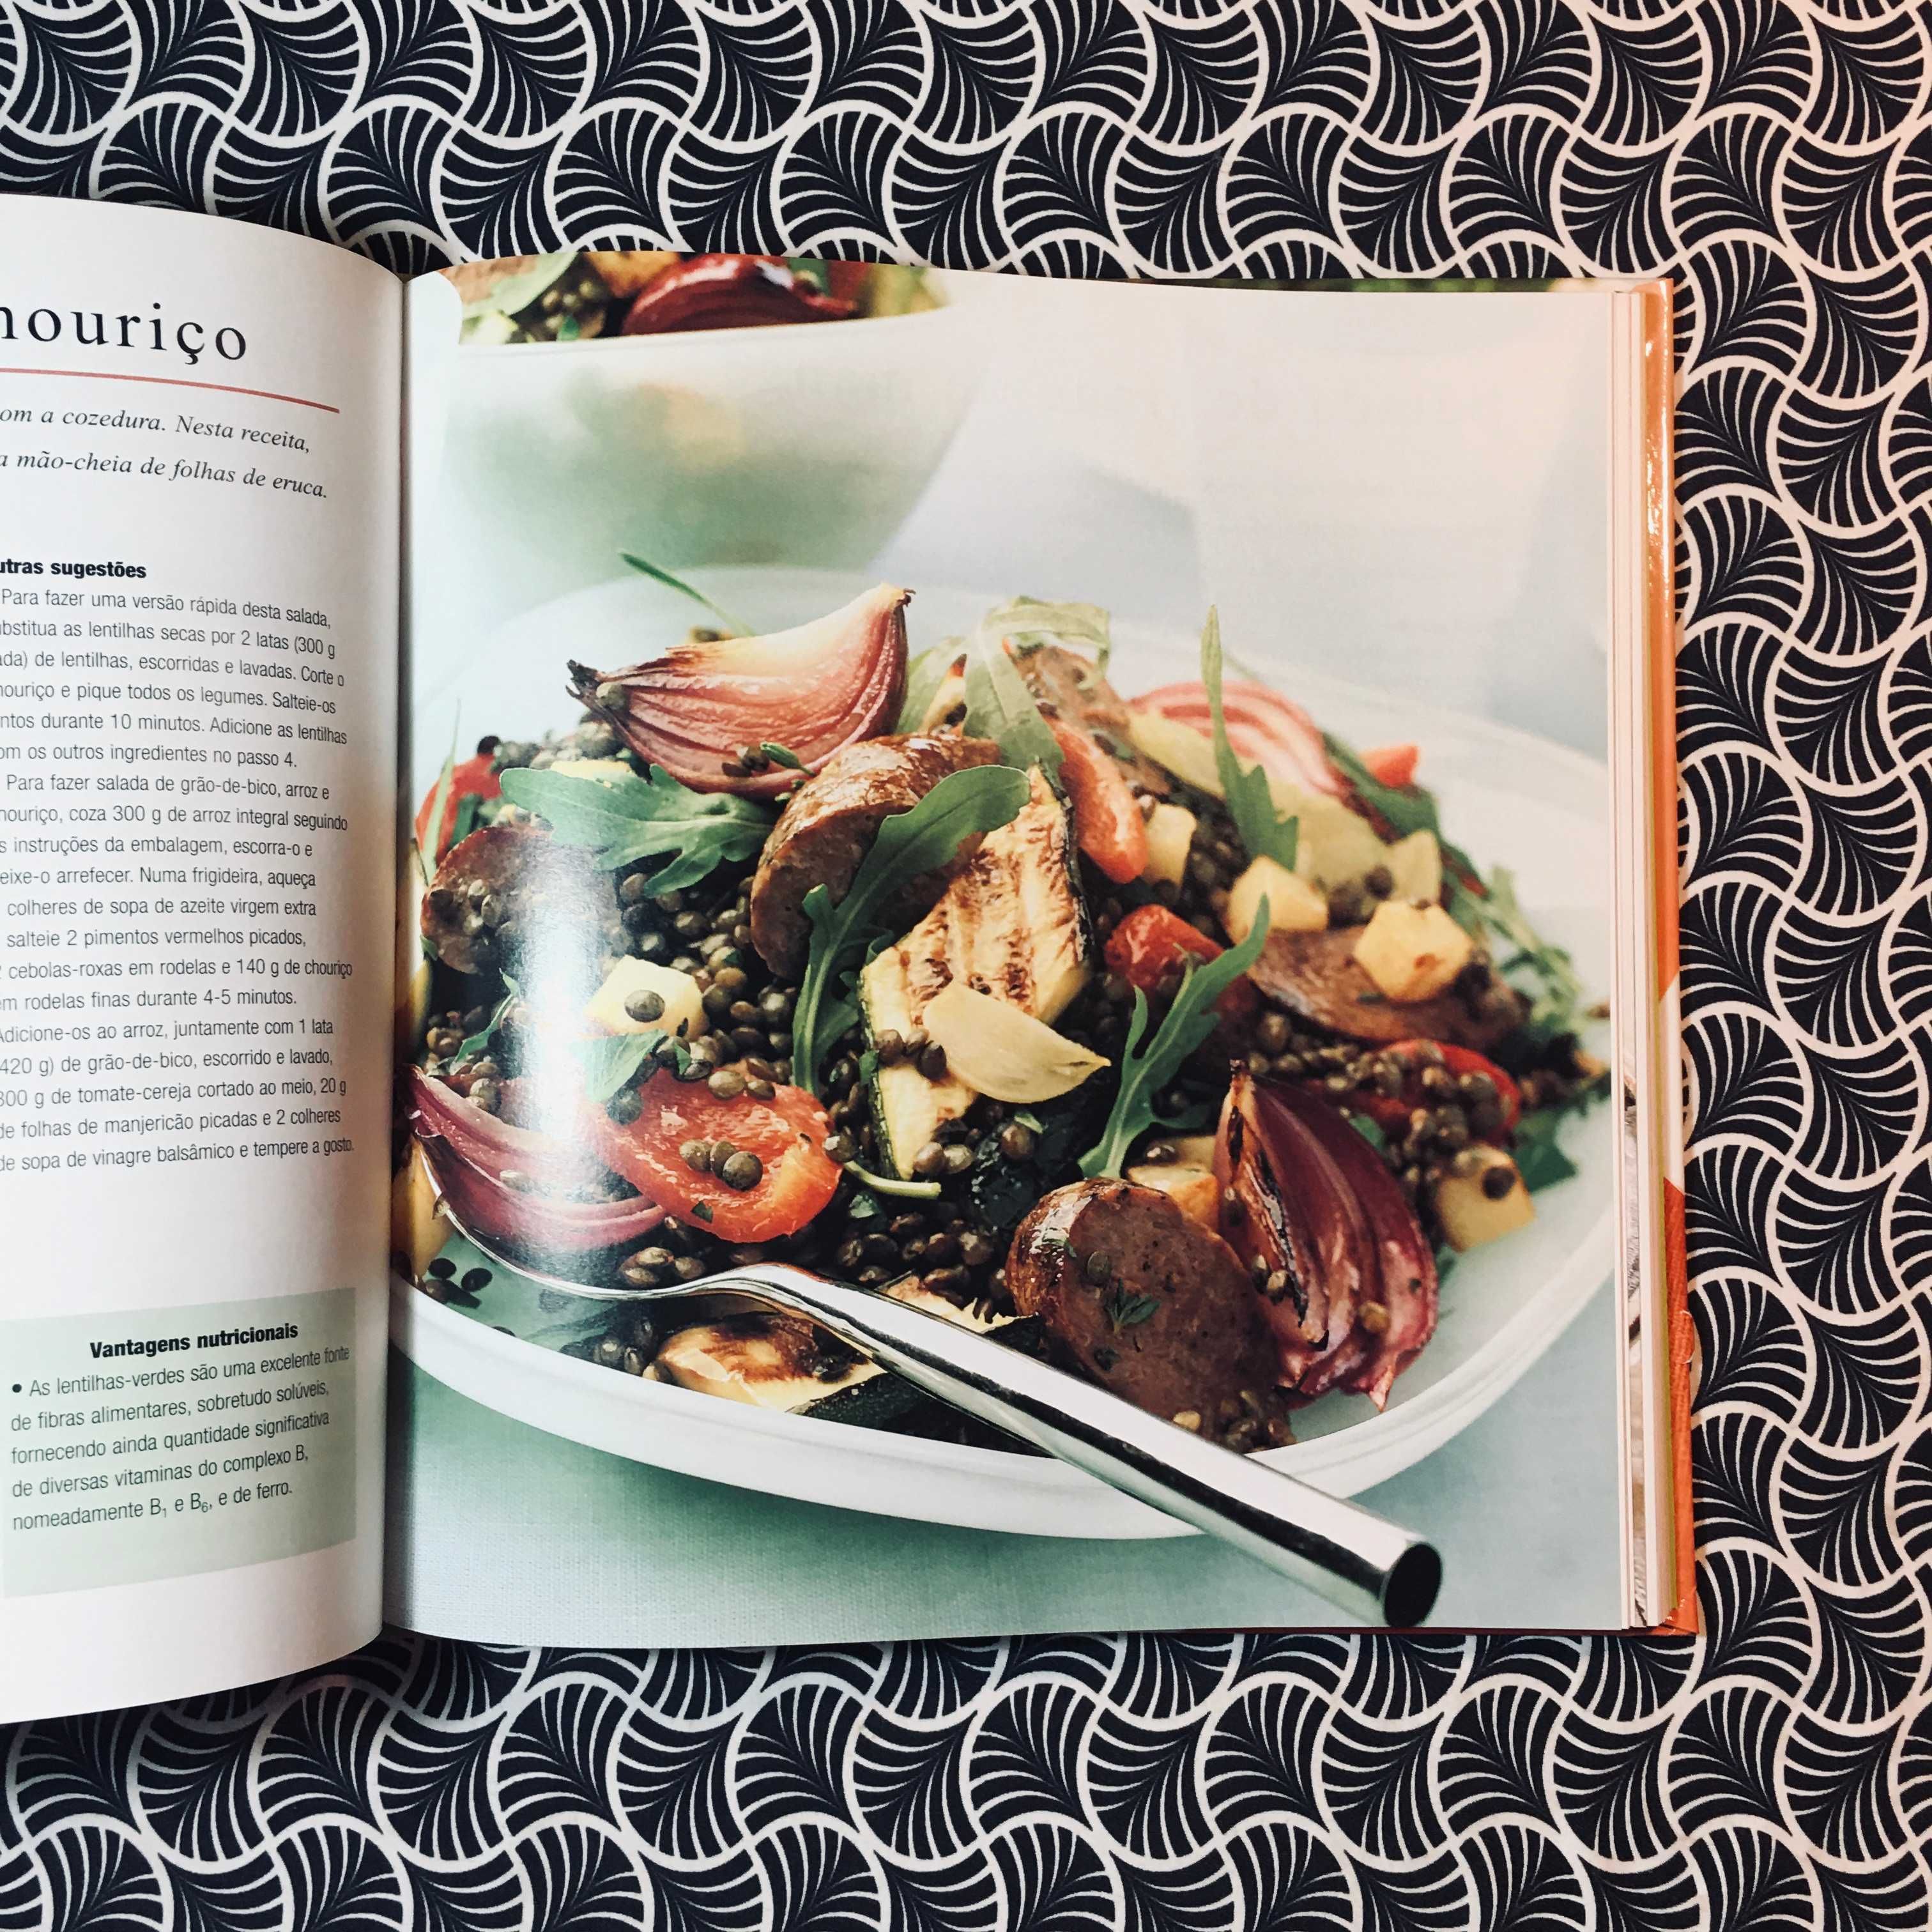 Super-saladas - Selecções do Reader's Digest